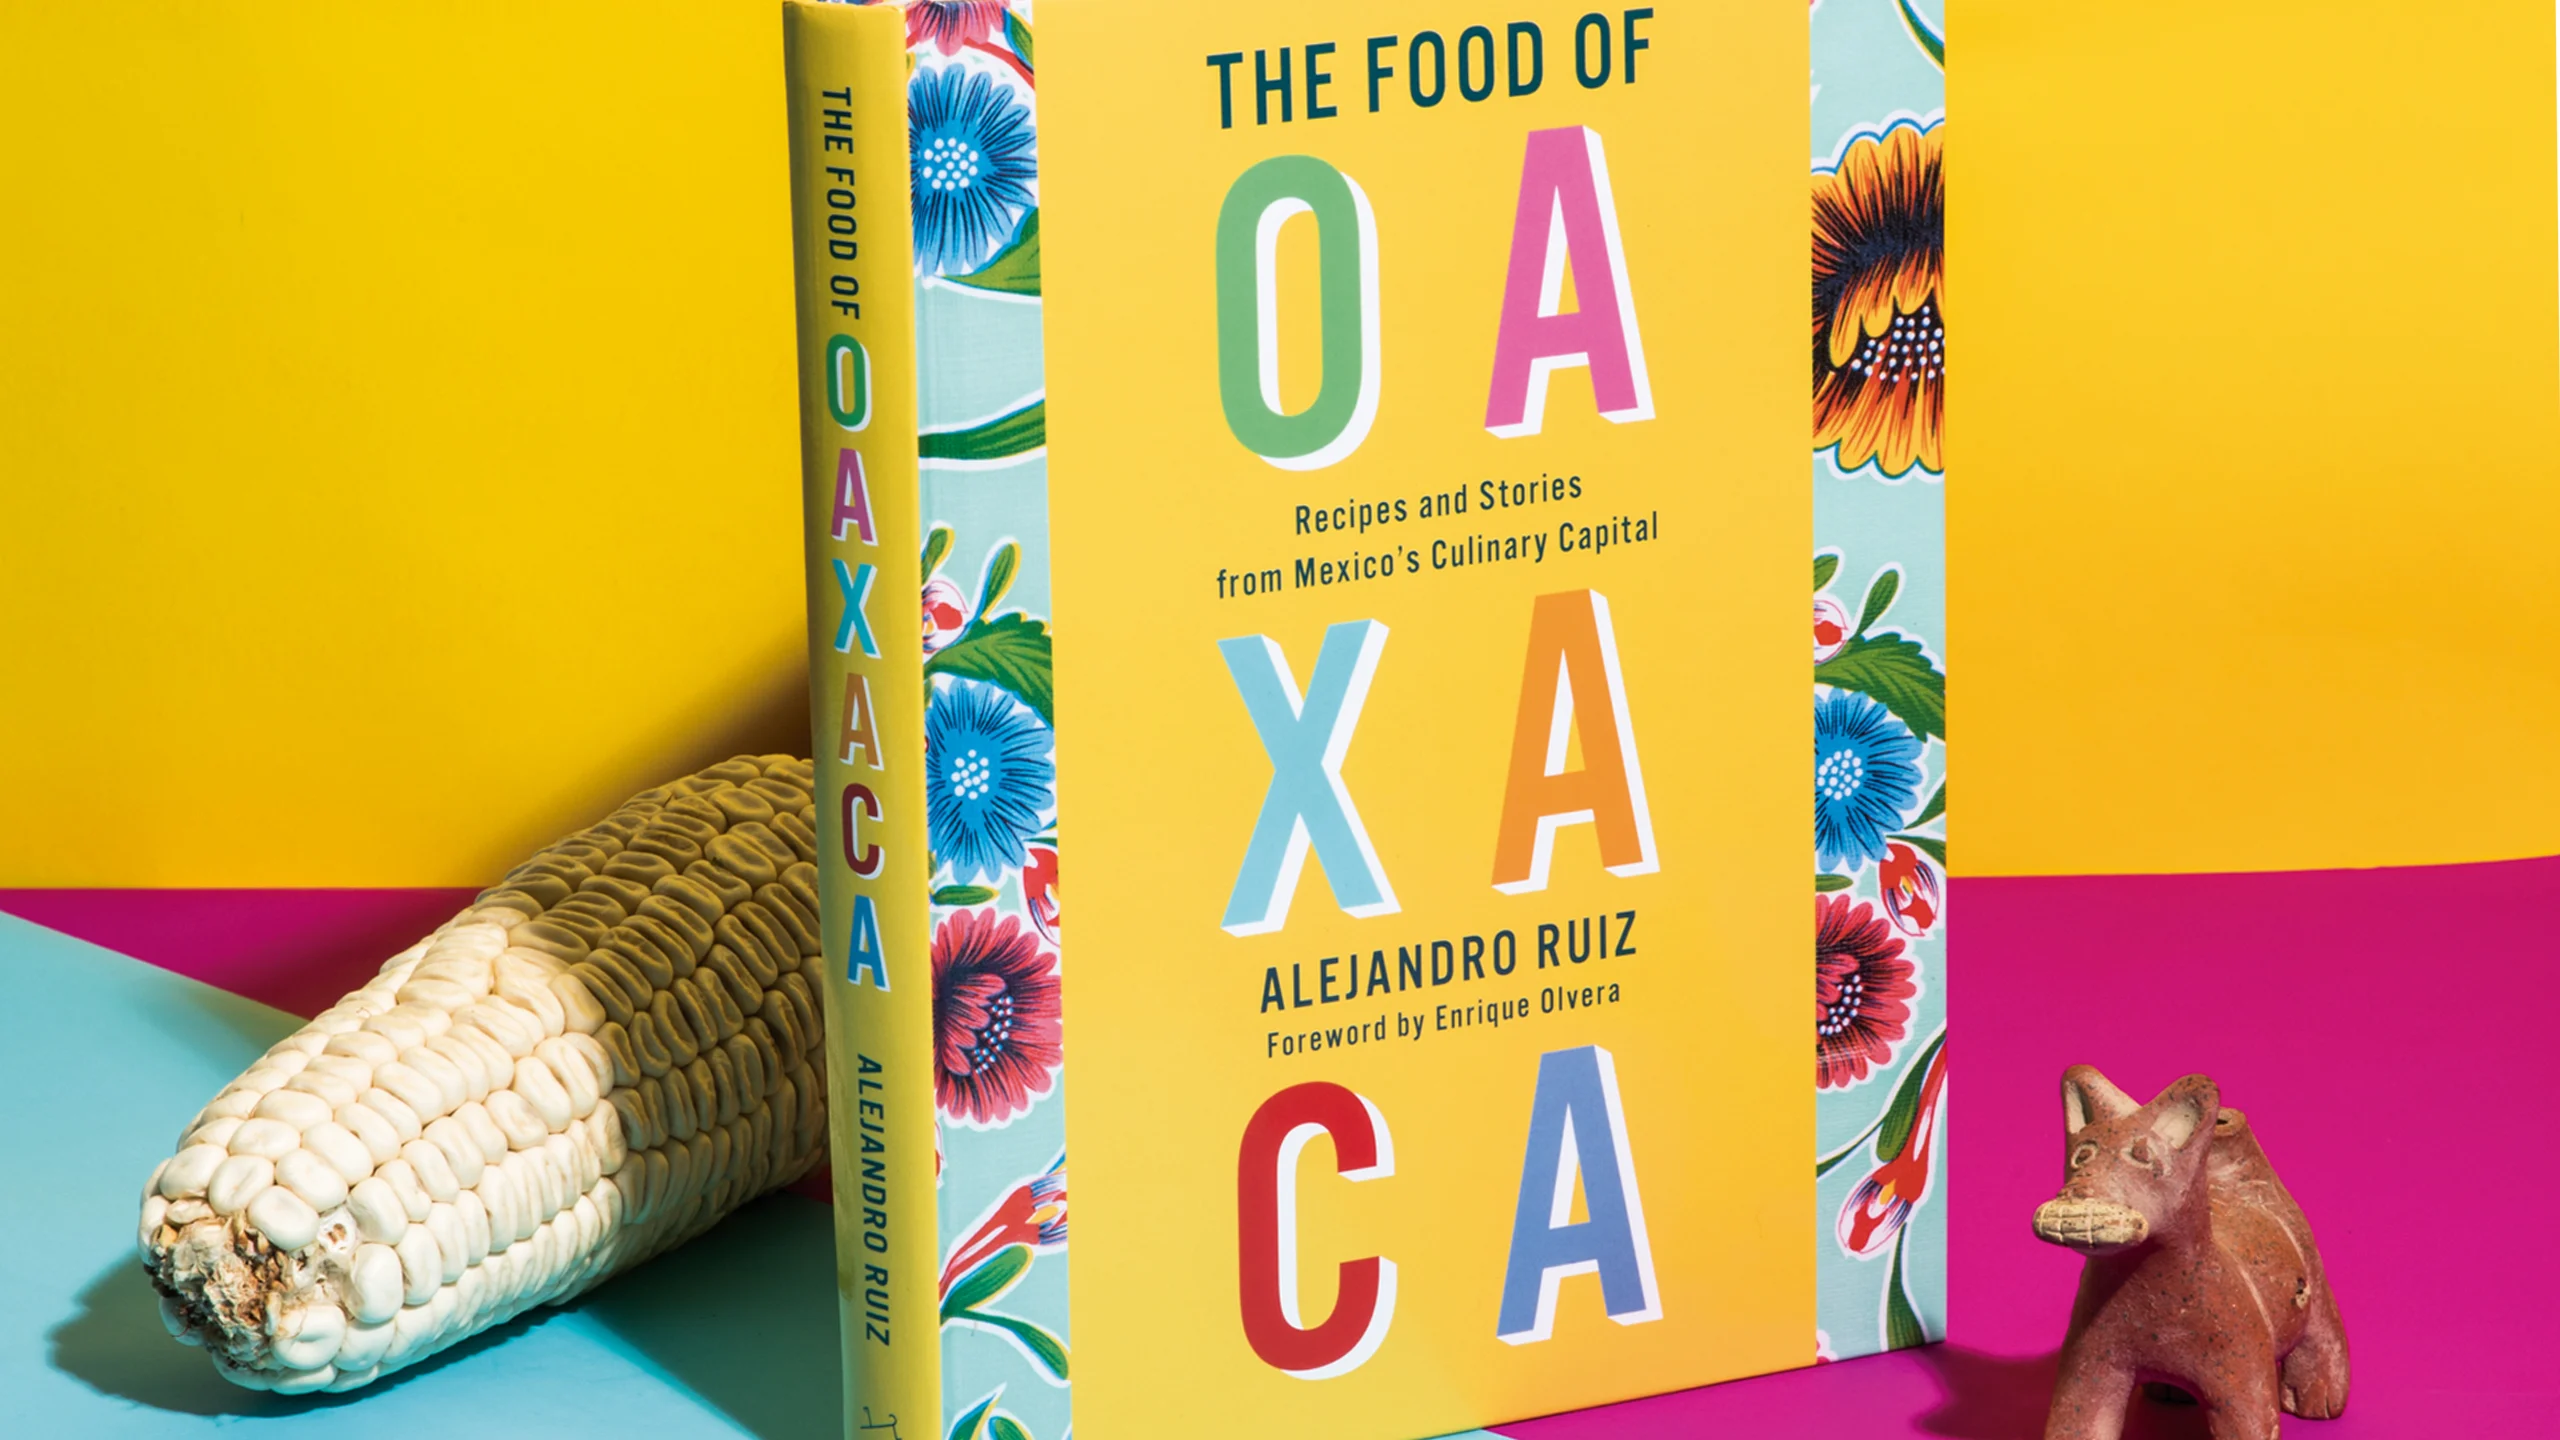 Este libro comparte las recetas de Oaxaca en los ojos de Alejandro Ruíz